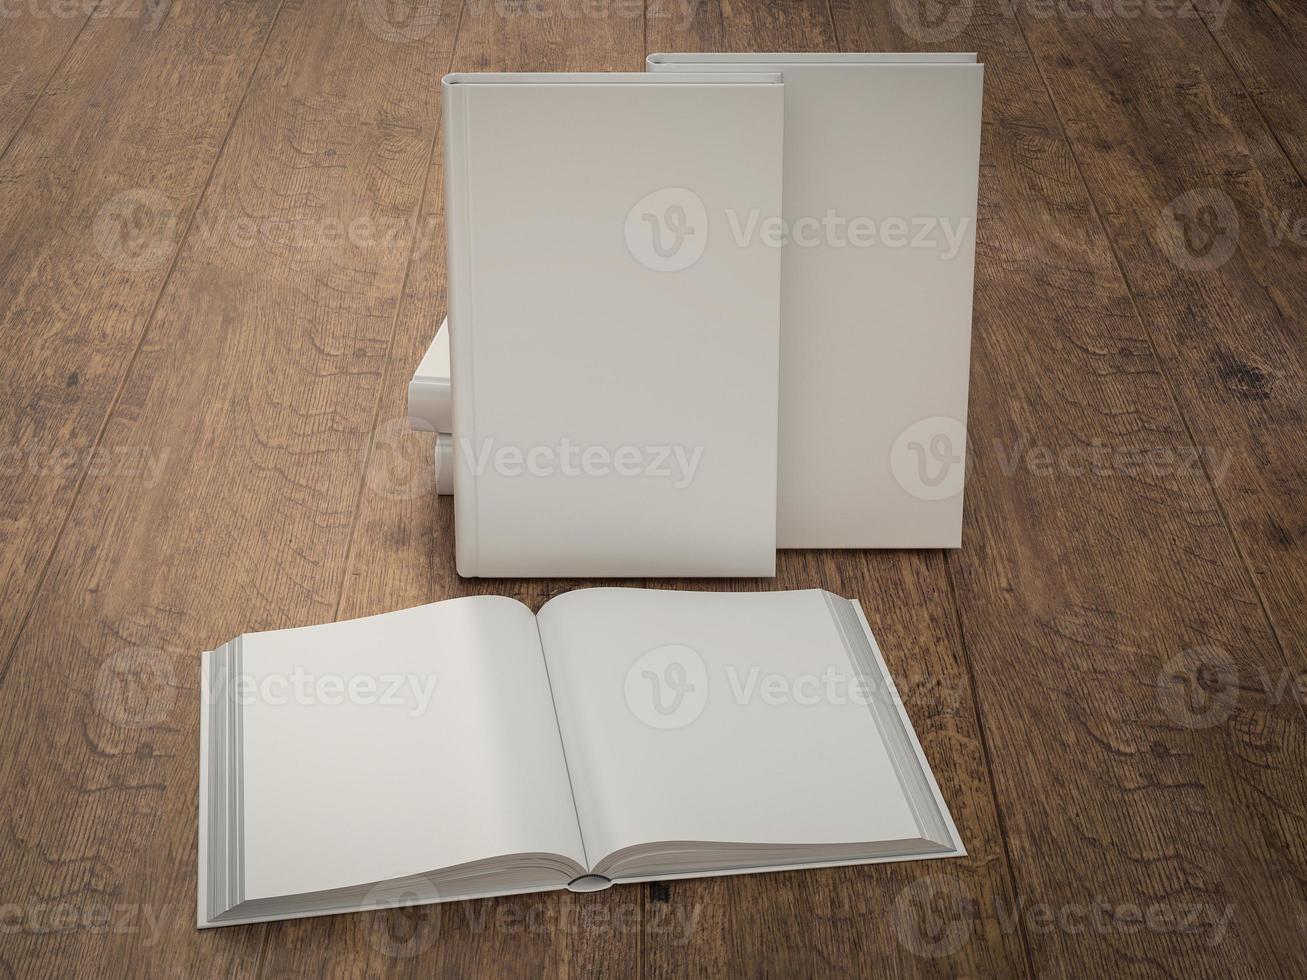 lege witte boek mockup sjabloon op houten achtergrond foto